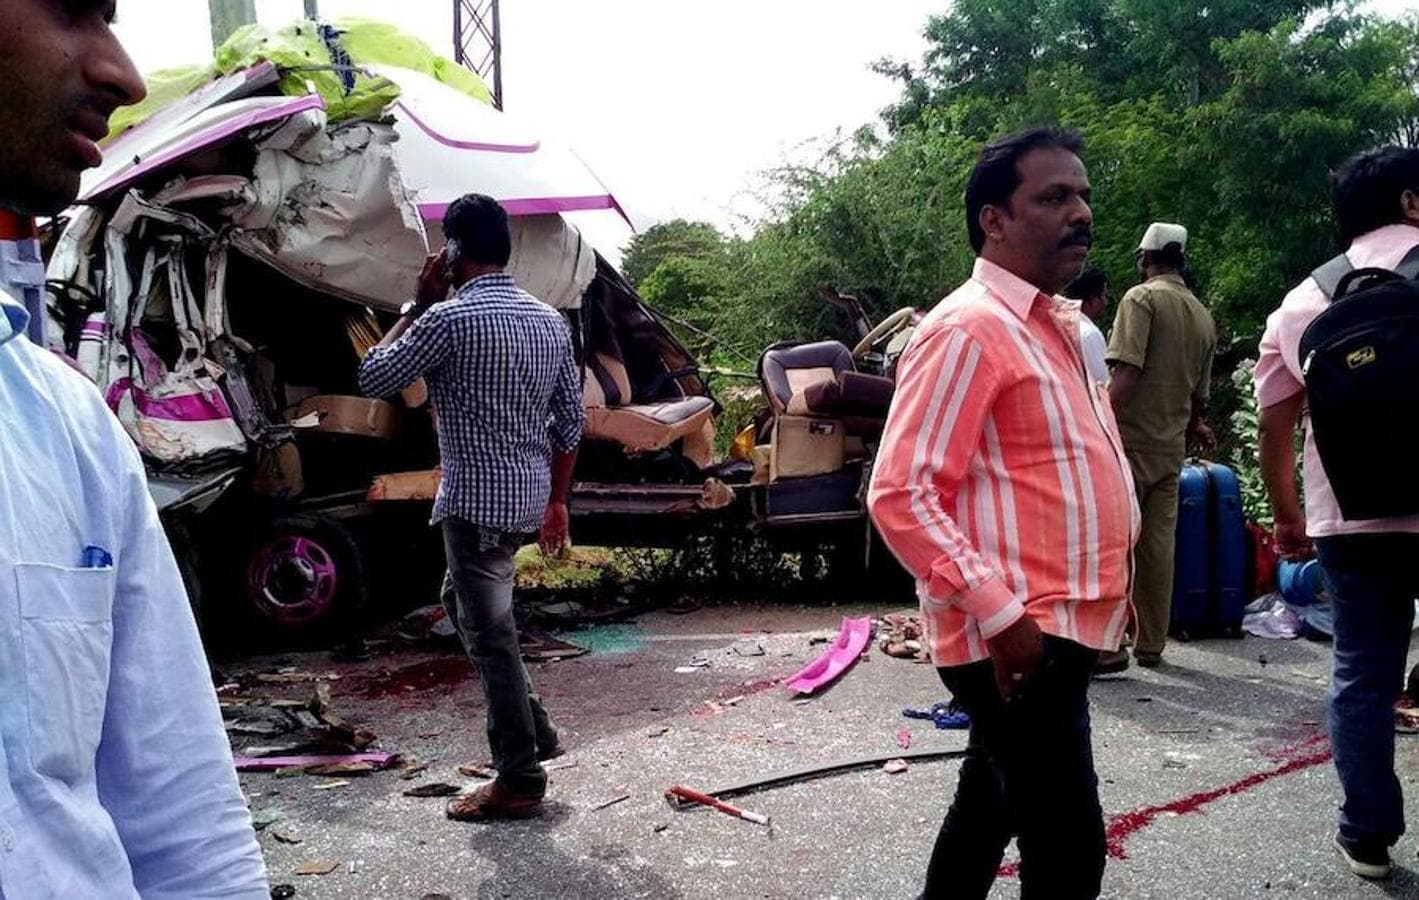 Galería del accidente de tráfico en Bangalore en la India